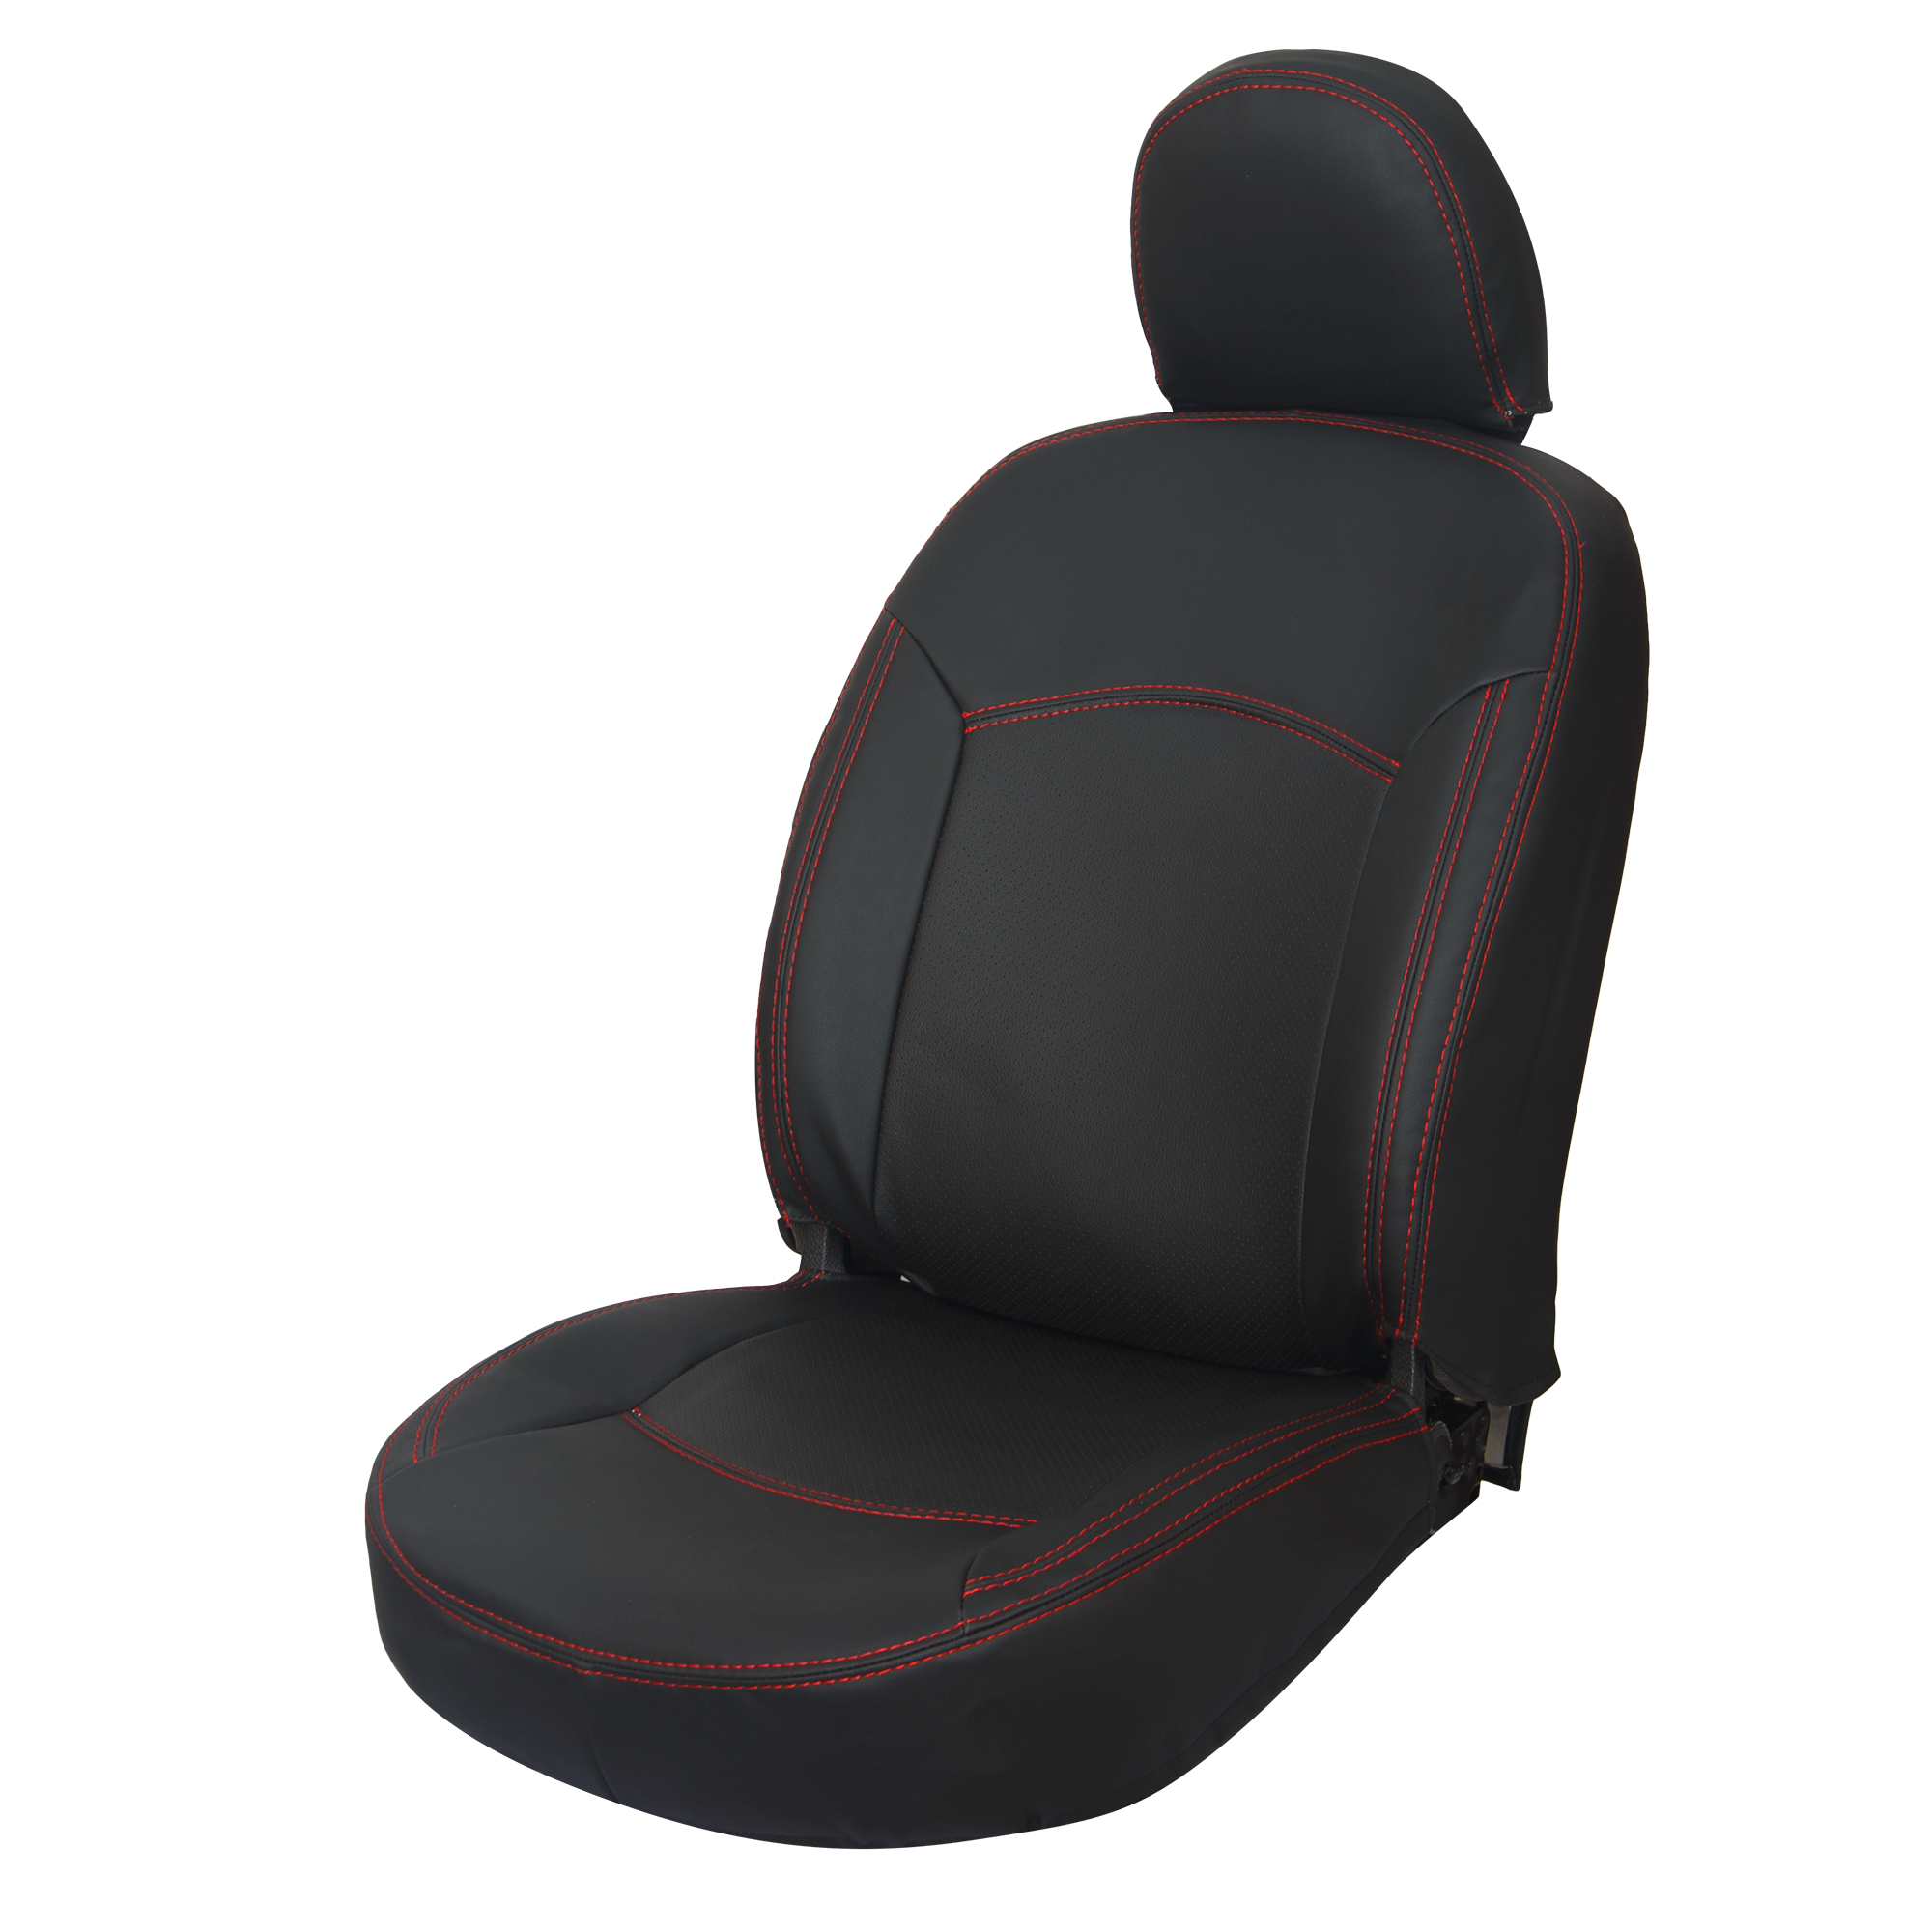 نکته خرید - قیمت روز وکش صندلی خودرو گروه تولیدی پارس روکش رضایی مدل 2018 مناسب برای پژو 206 خرید